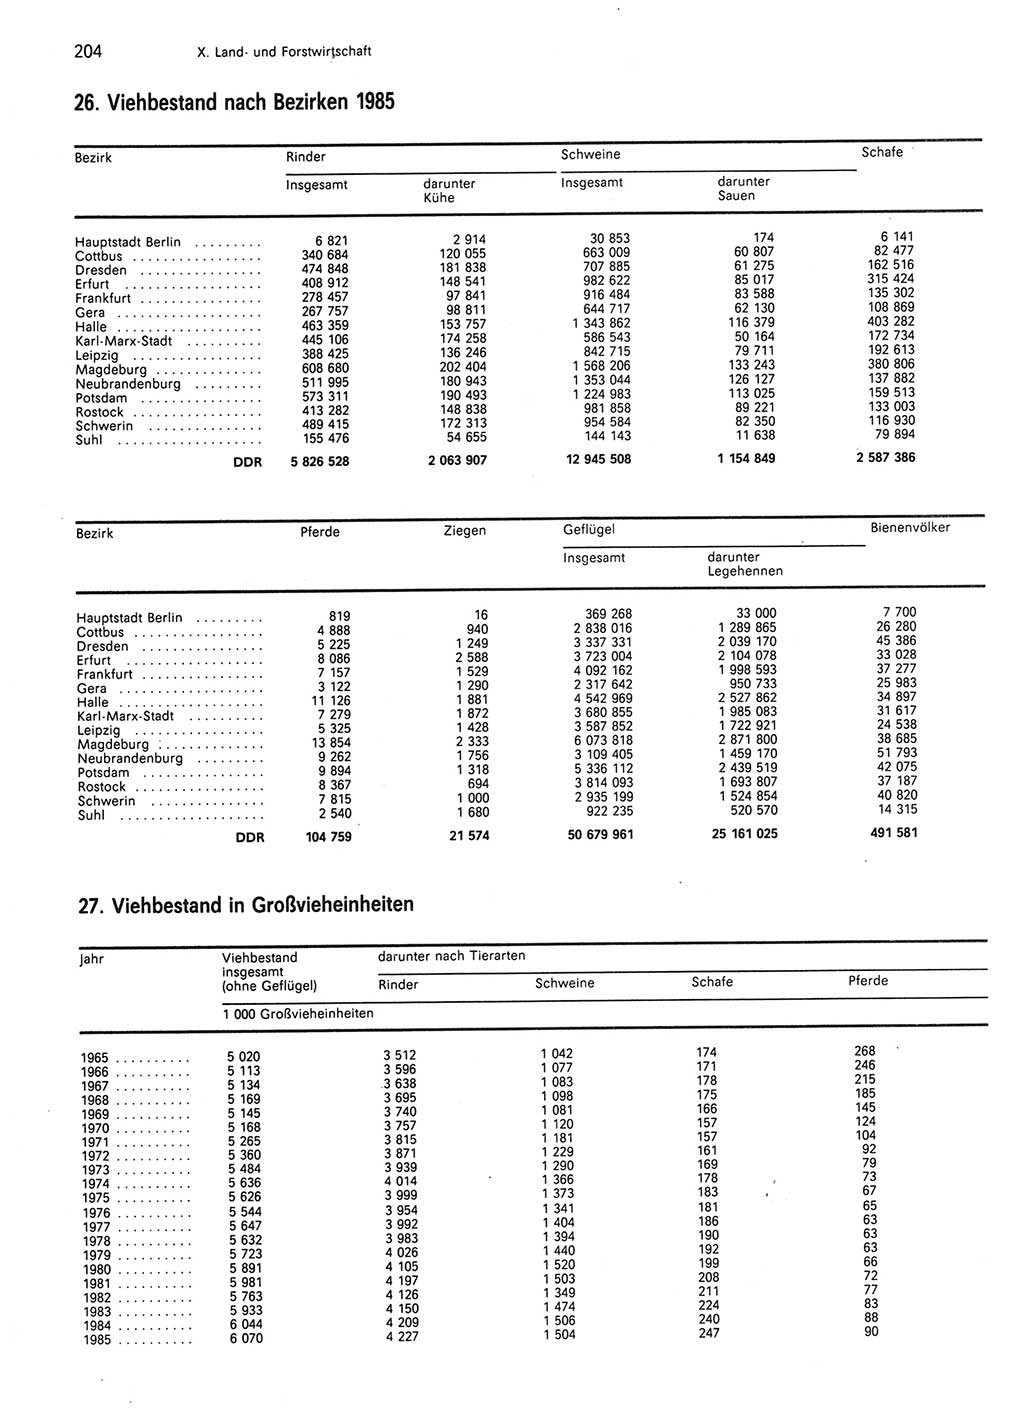 Statistisches Jahrbuch der Deutschen Demokratischen Republik (DDR) 1986, Seite 204 (Stat. Jb. DDR 1986, S. 204)